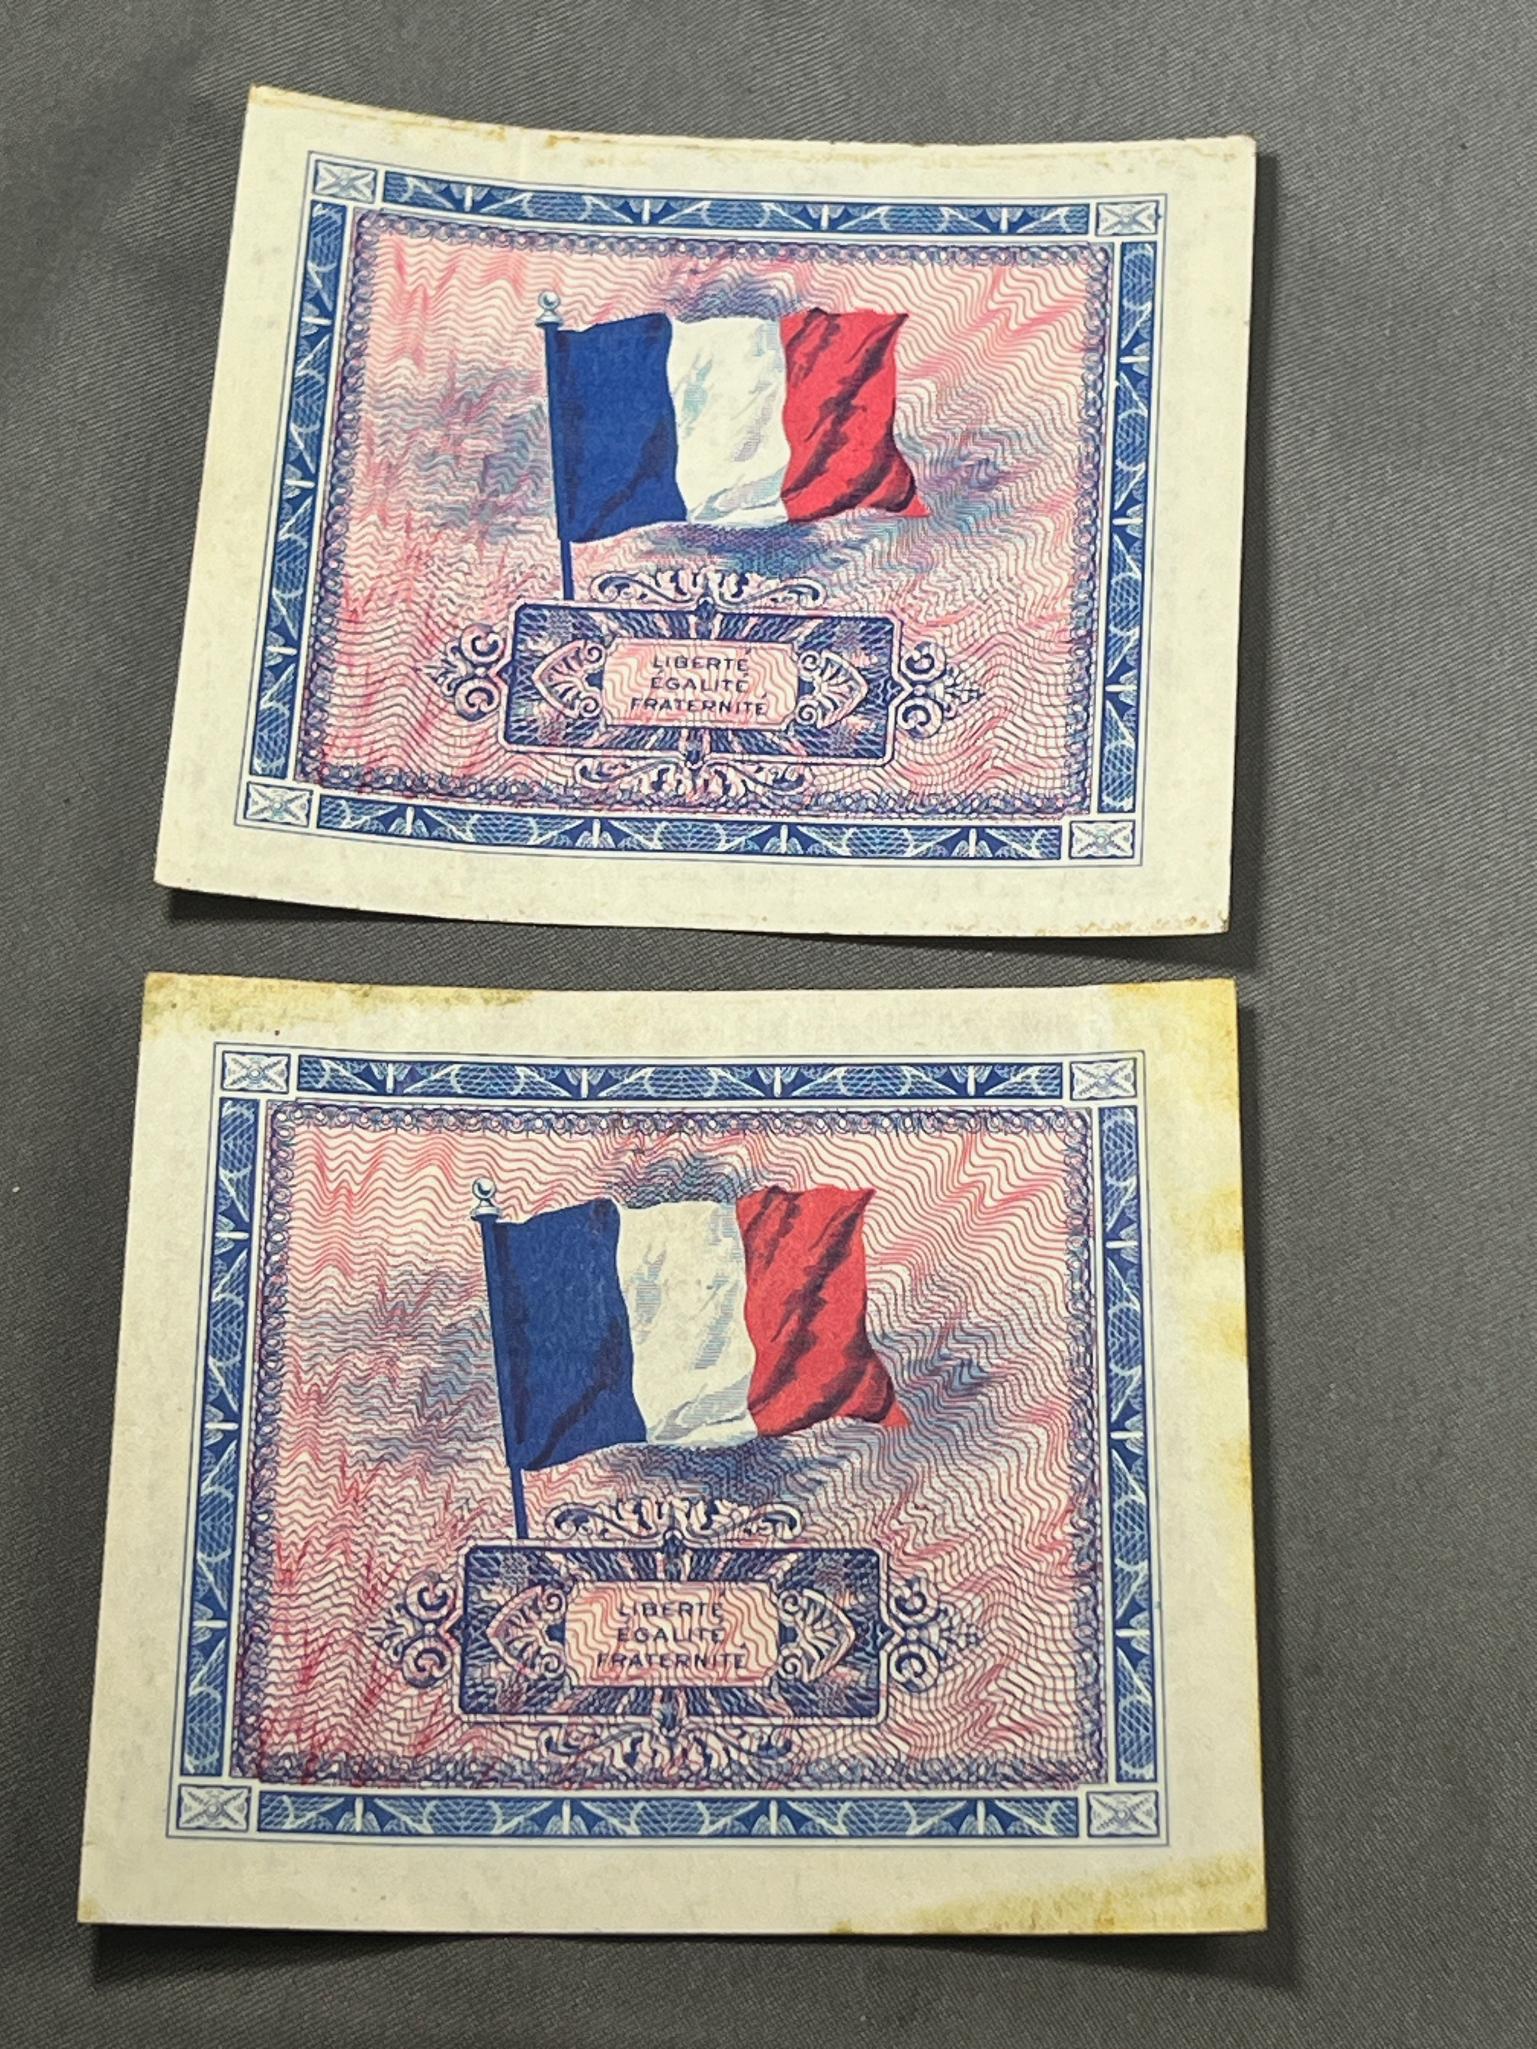 2- 1944 France 10 Francs Banknotes